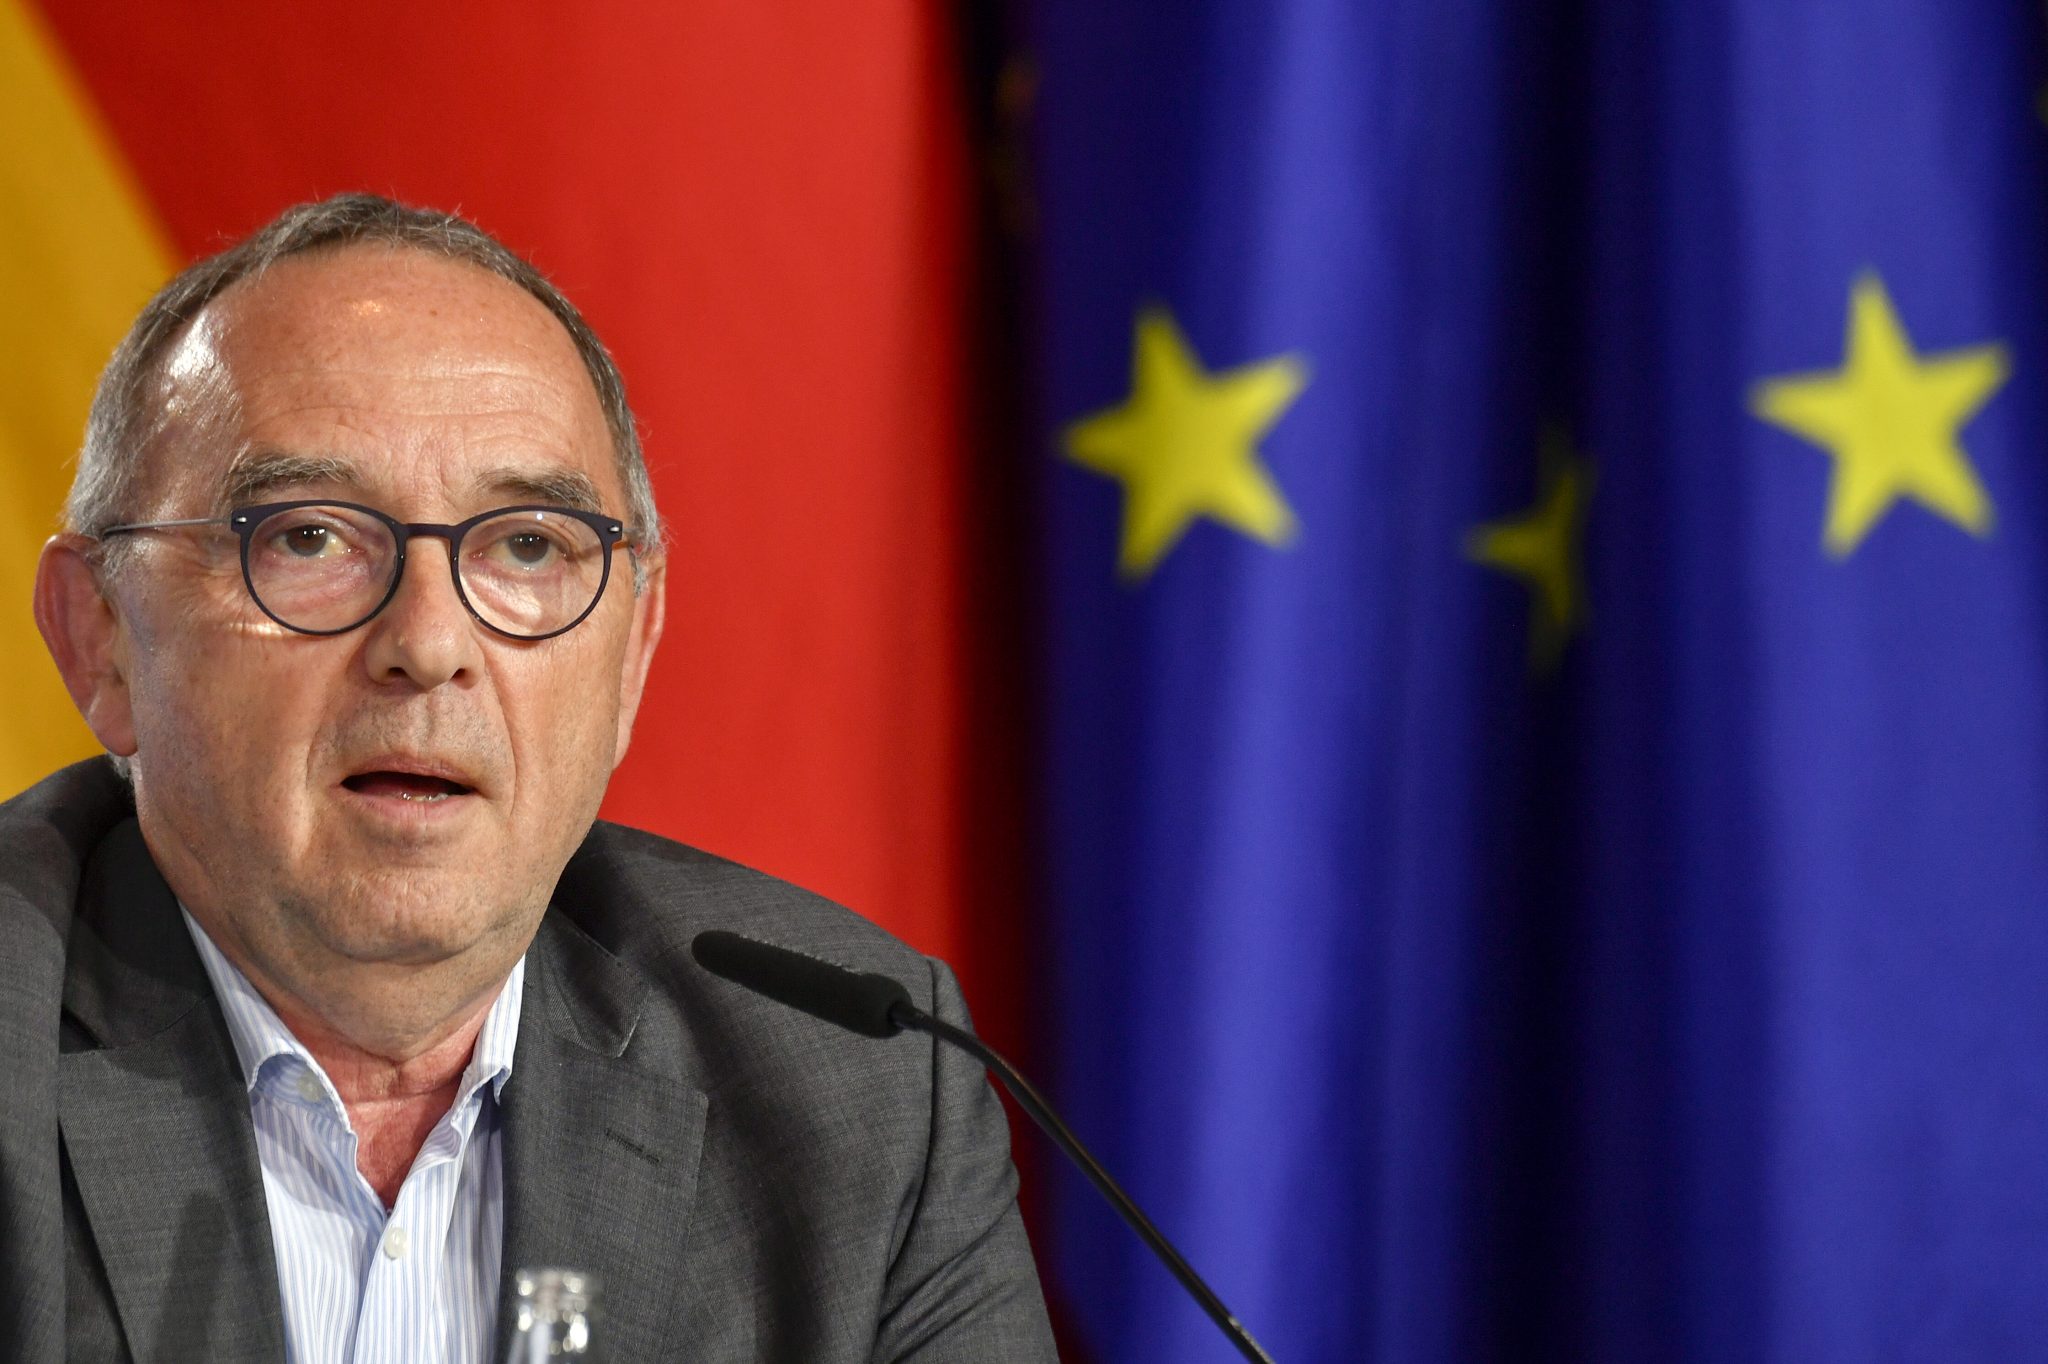 Der SPD-Vorsitzende Norbert Walter-Borjans plädiert für mehr Europa und einen EU-weiten Mindestlohn Foto: picture alliance / AP Images